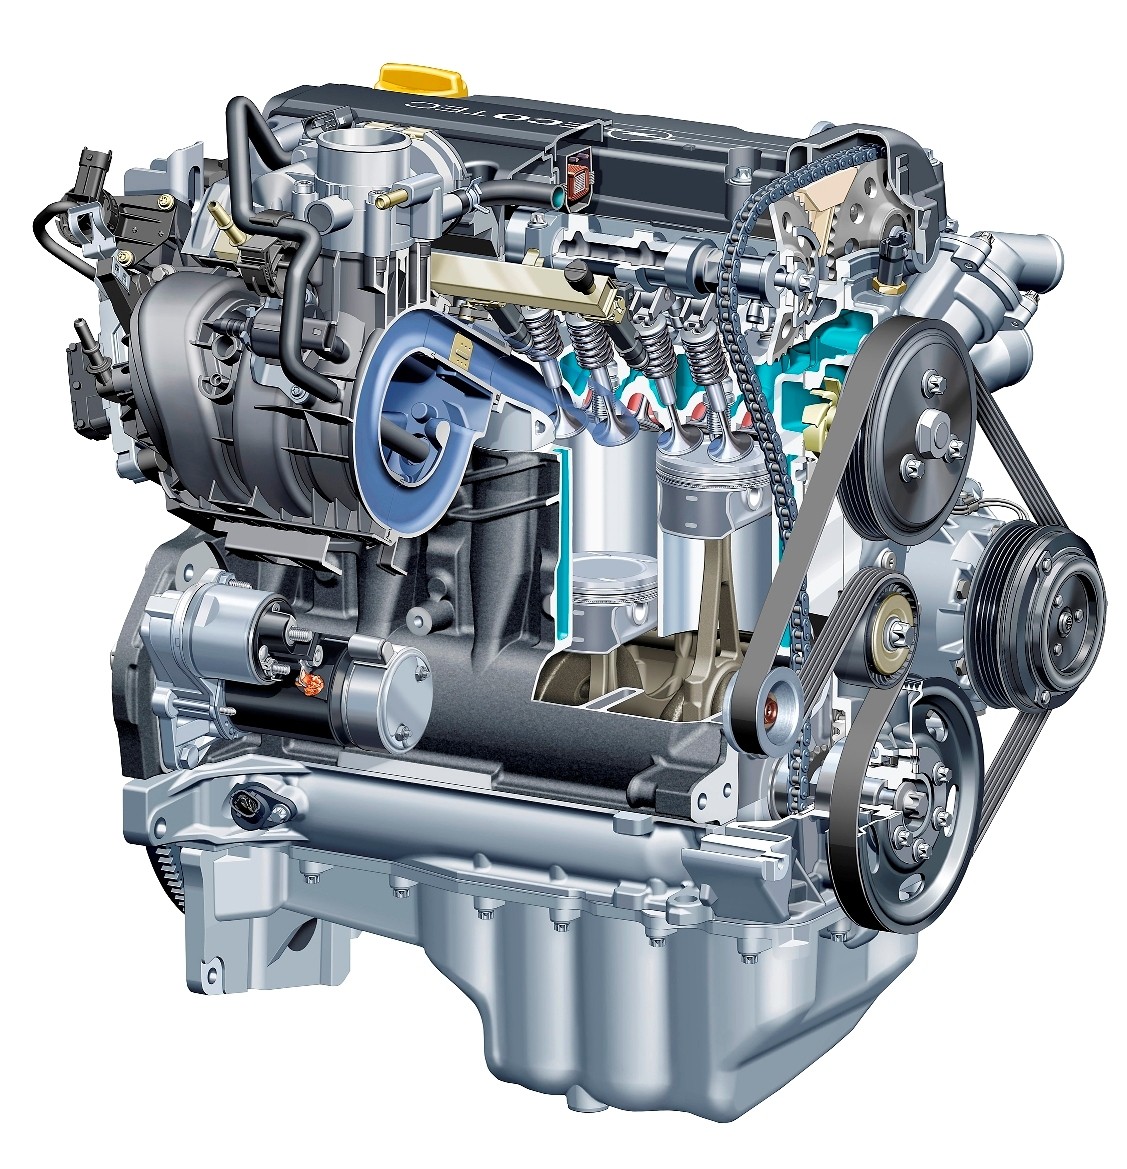 M54B25 2.5L motor iz BMW-a - najvažnije informacije na jednom mjestu